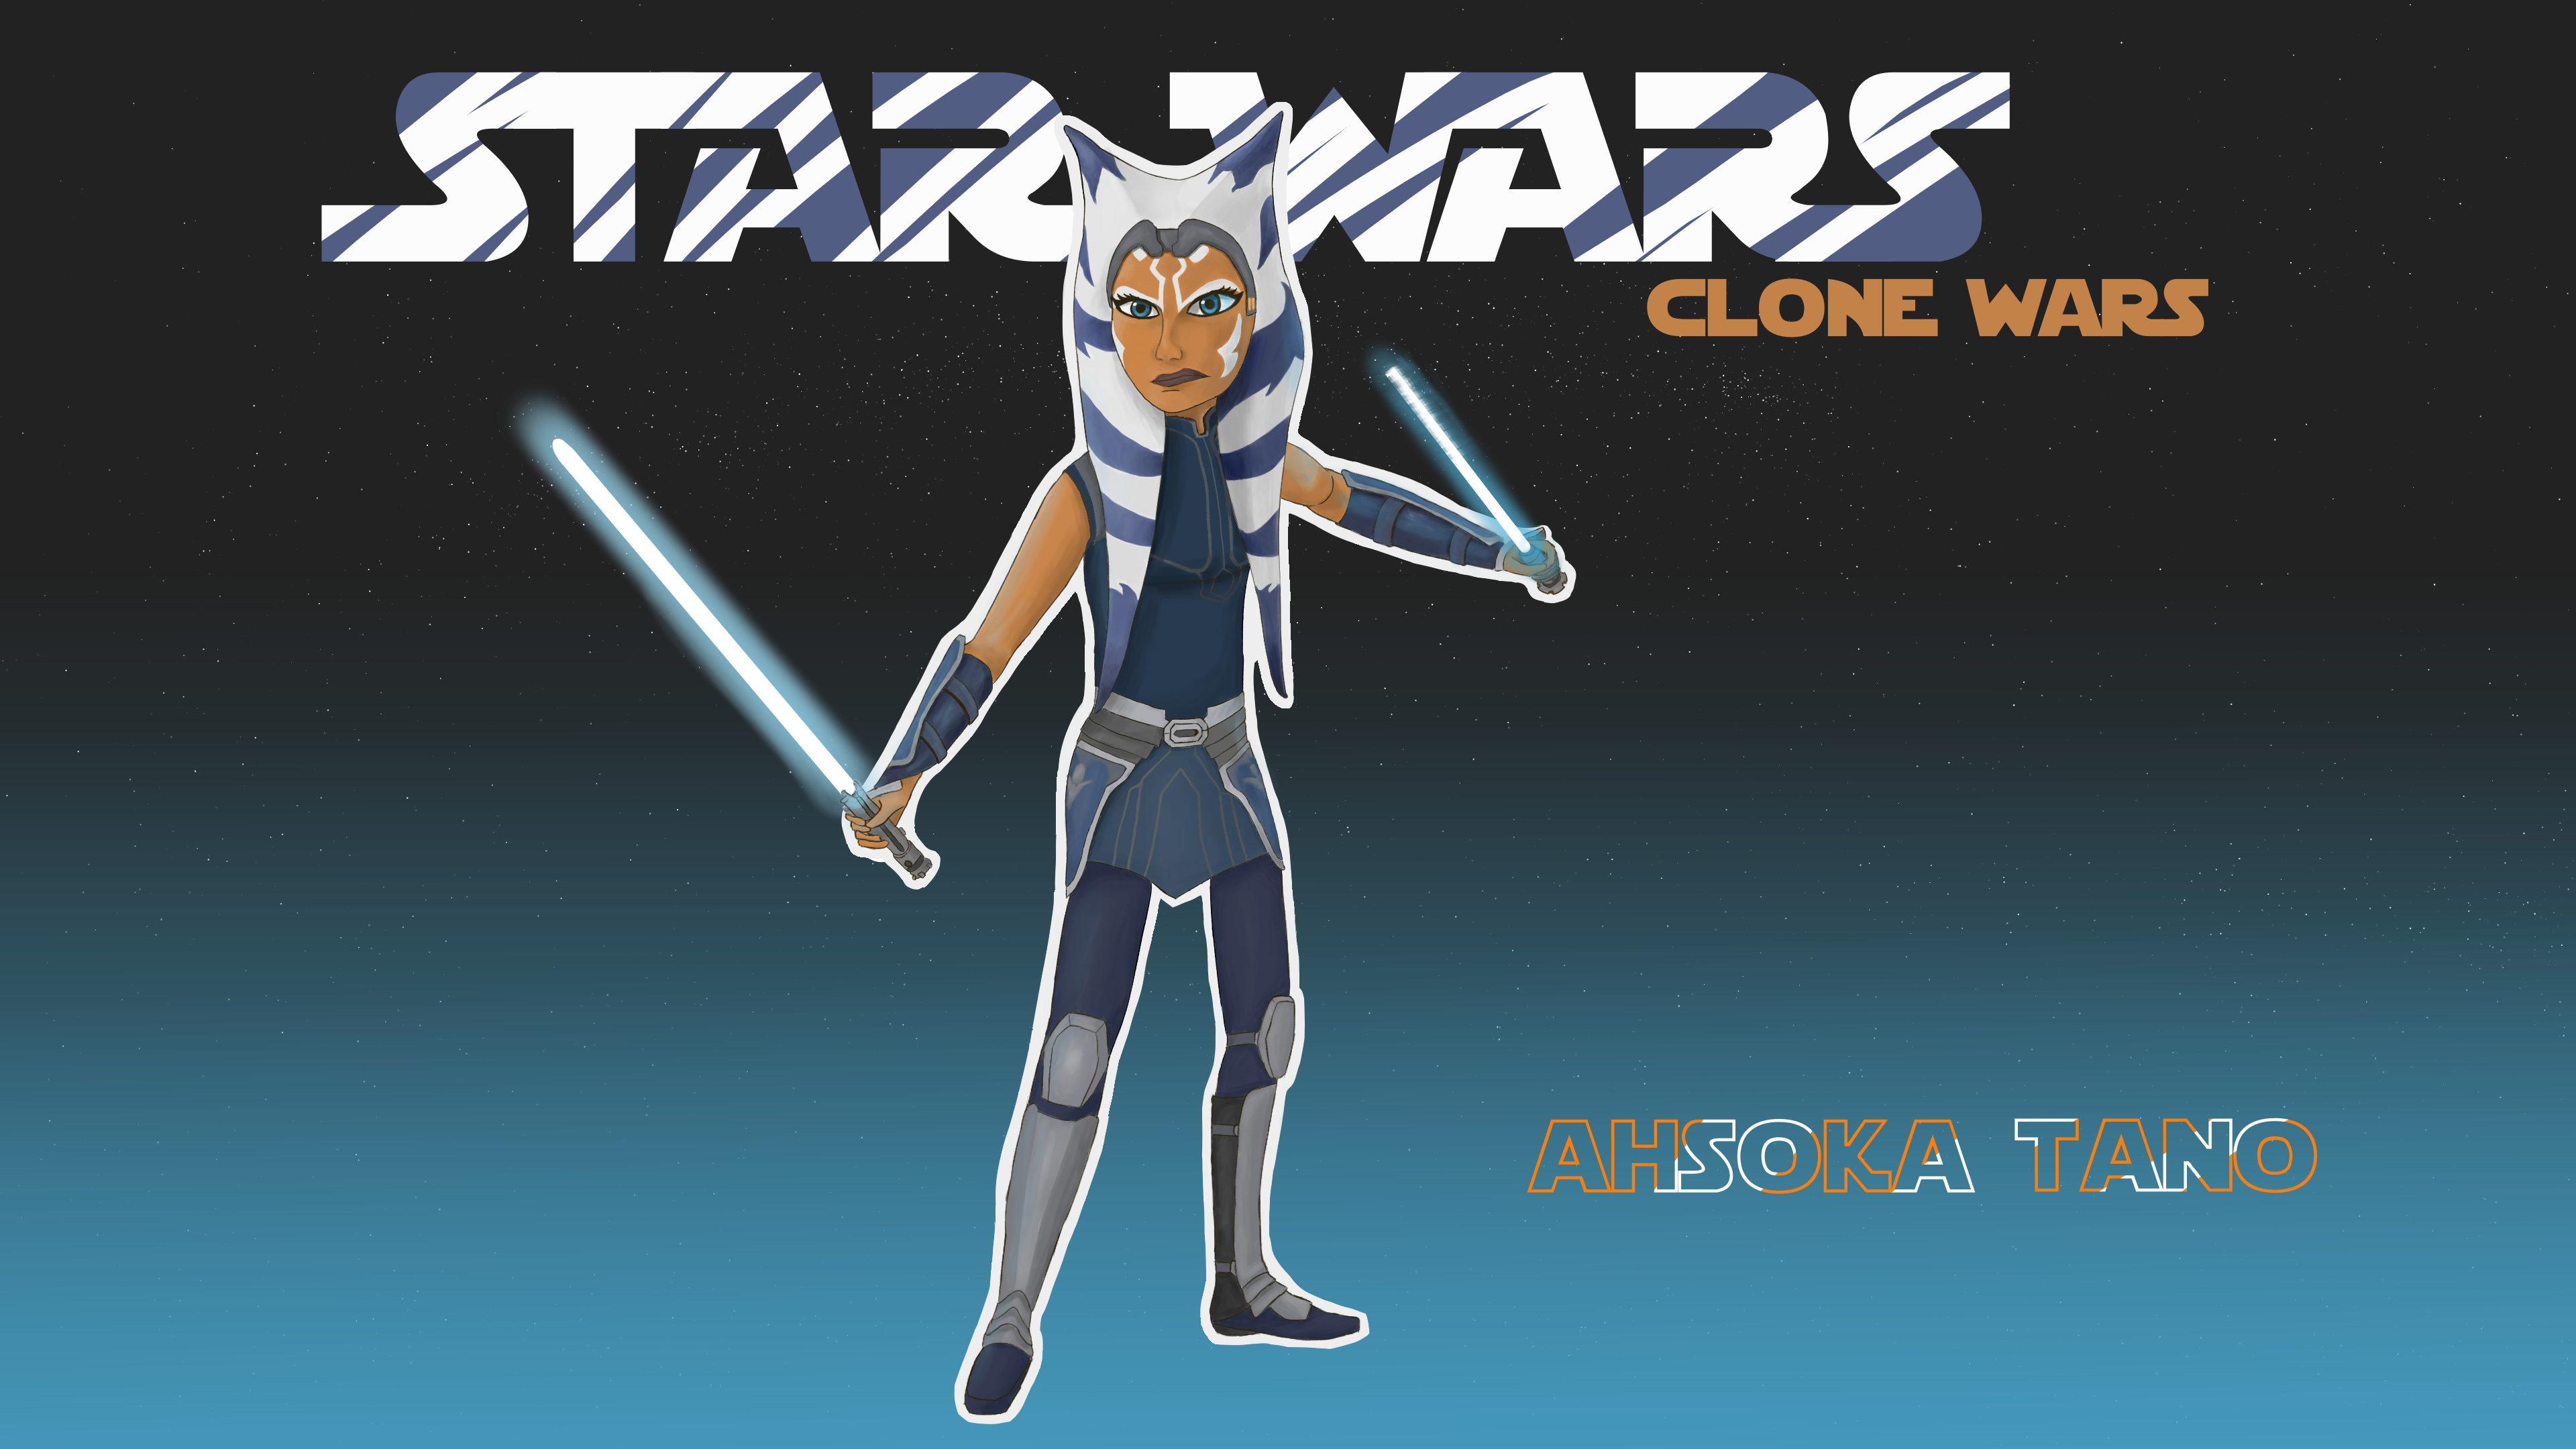 General 3840x2160 Star Wars Star Wars: The Clone Wars Ahsoka Tano Jedi lightsaber universe Togruta TV series